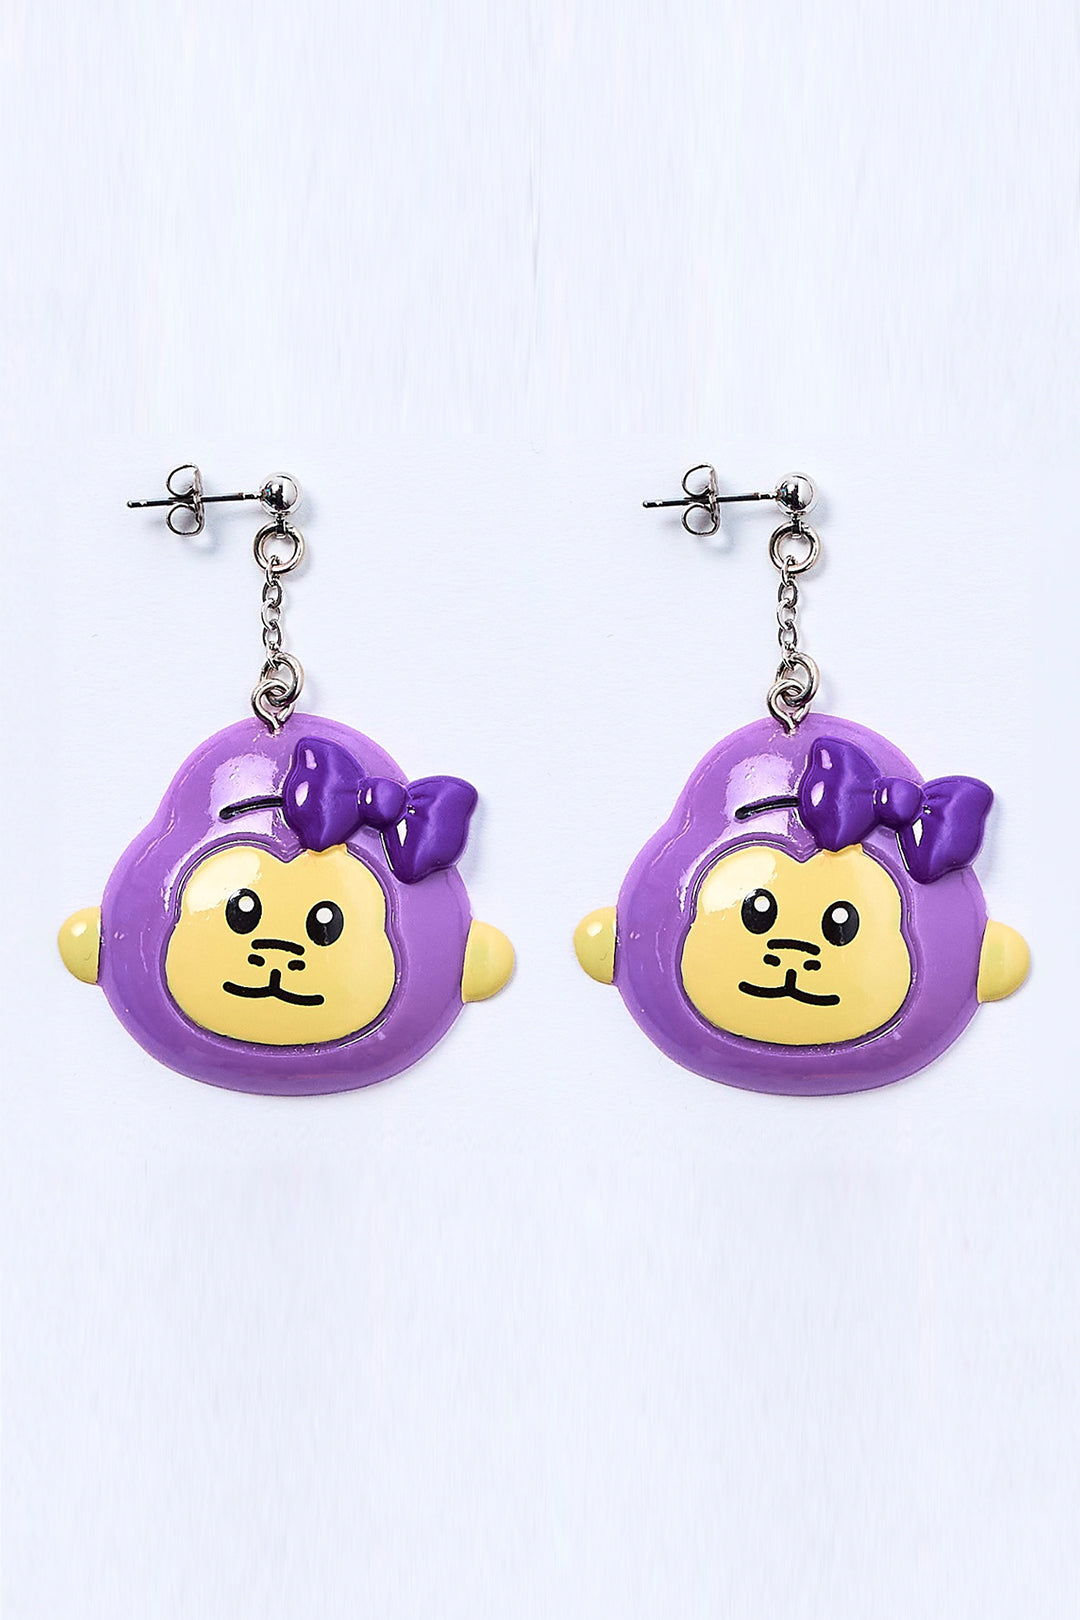 Goritan earrings 